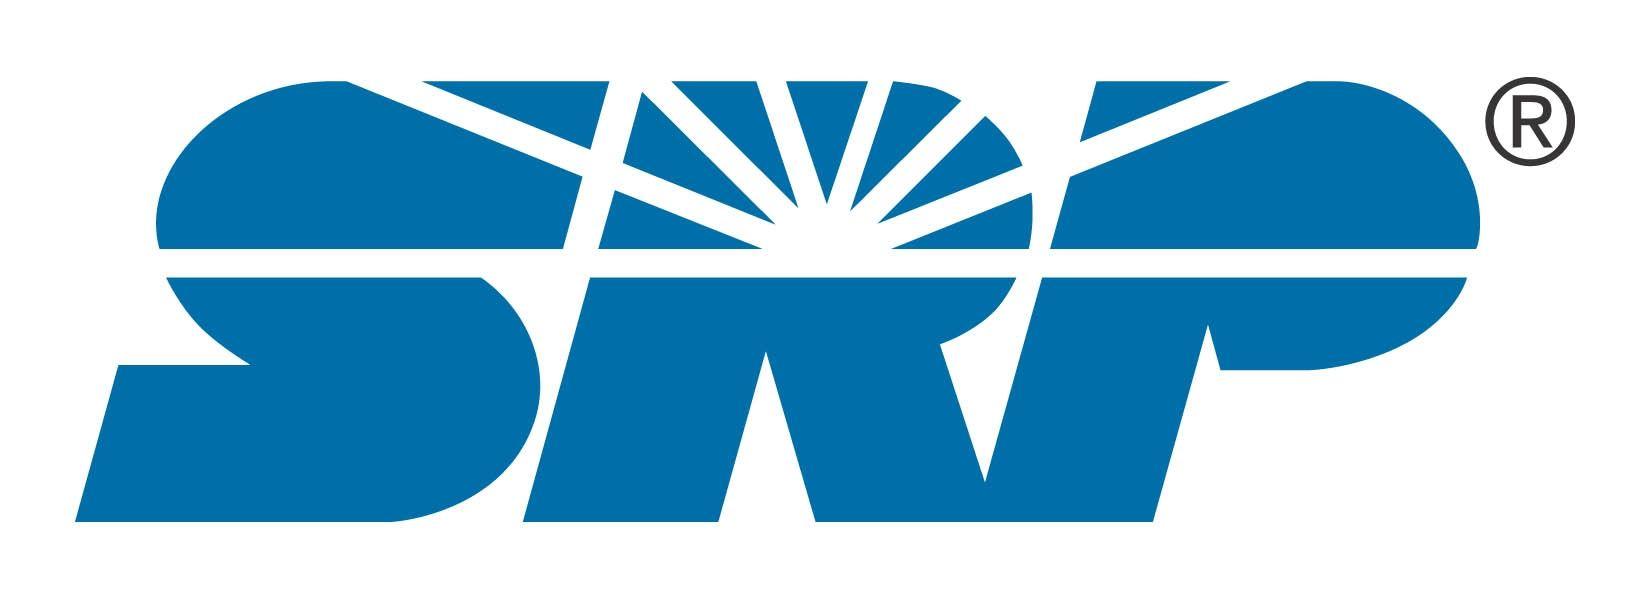 SRP Logo - Srp Logo - 9000+ Logo Design Ideas